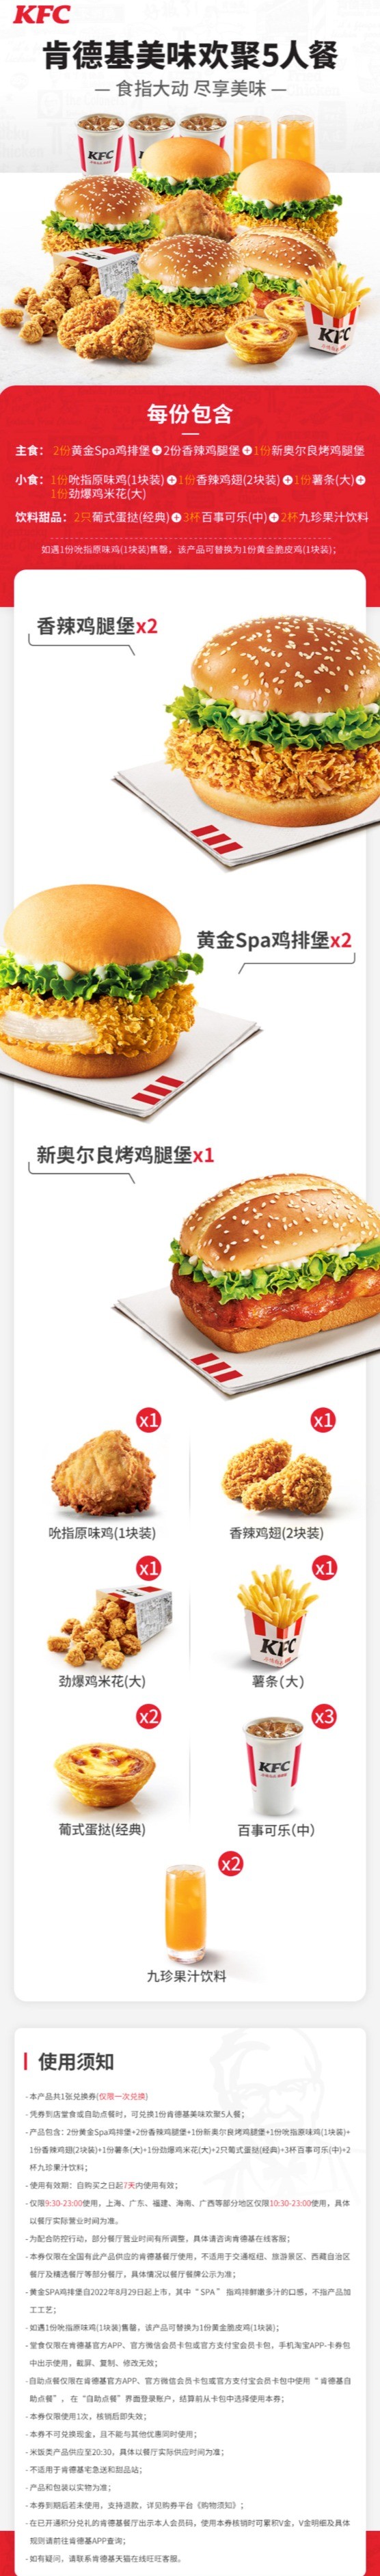 KFC/肯德基 美味欢聚5人餐兑换券